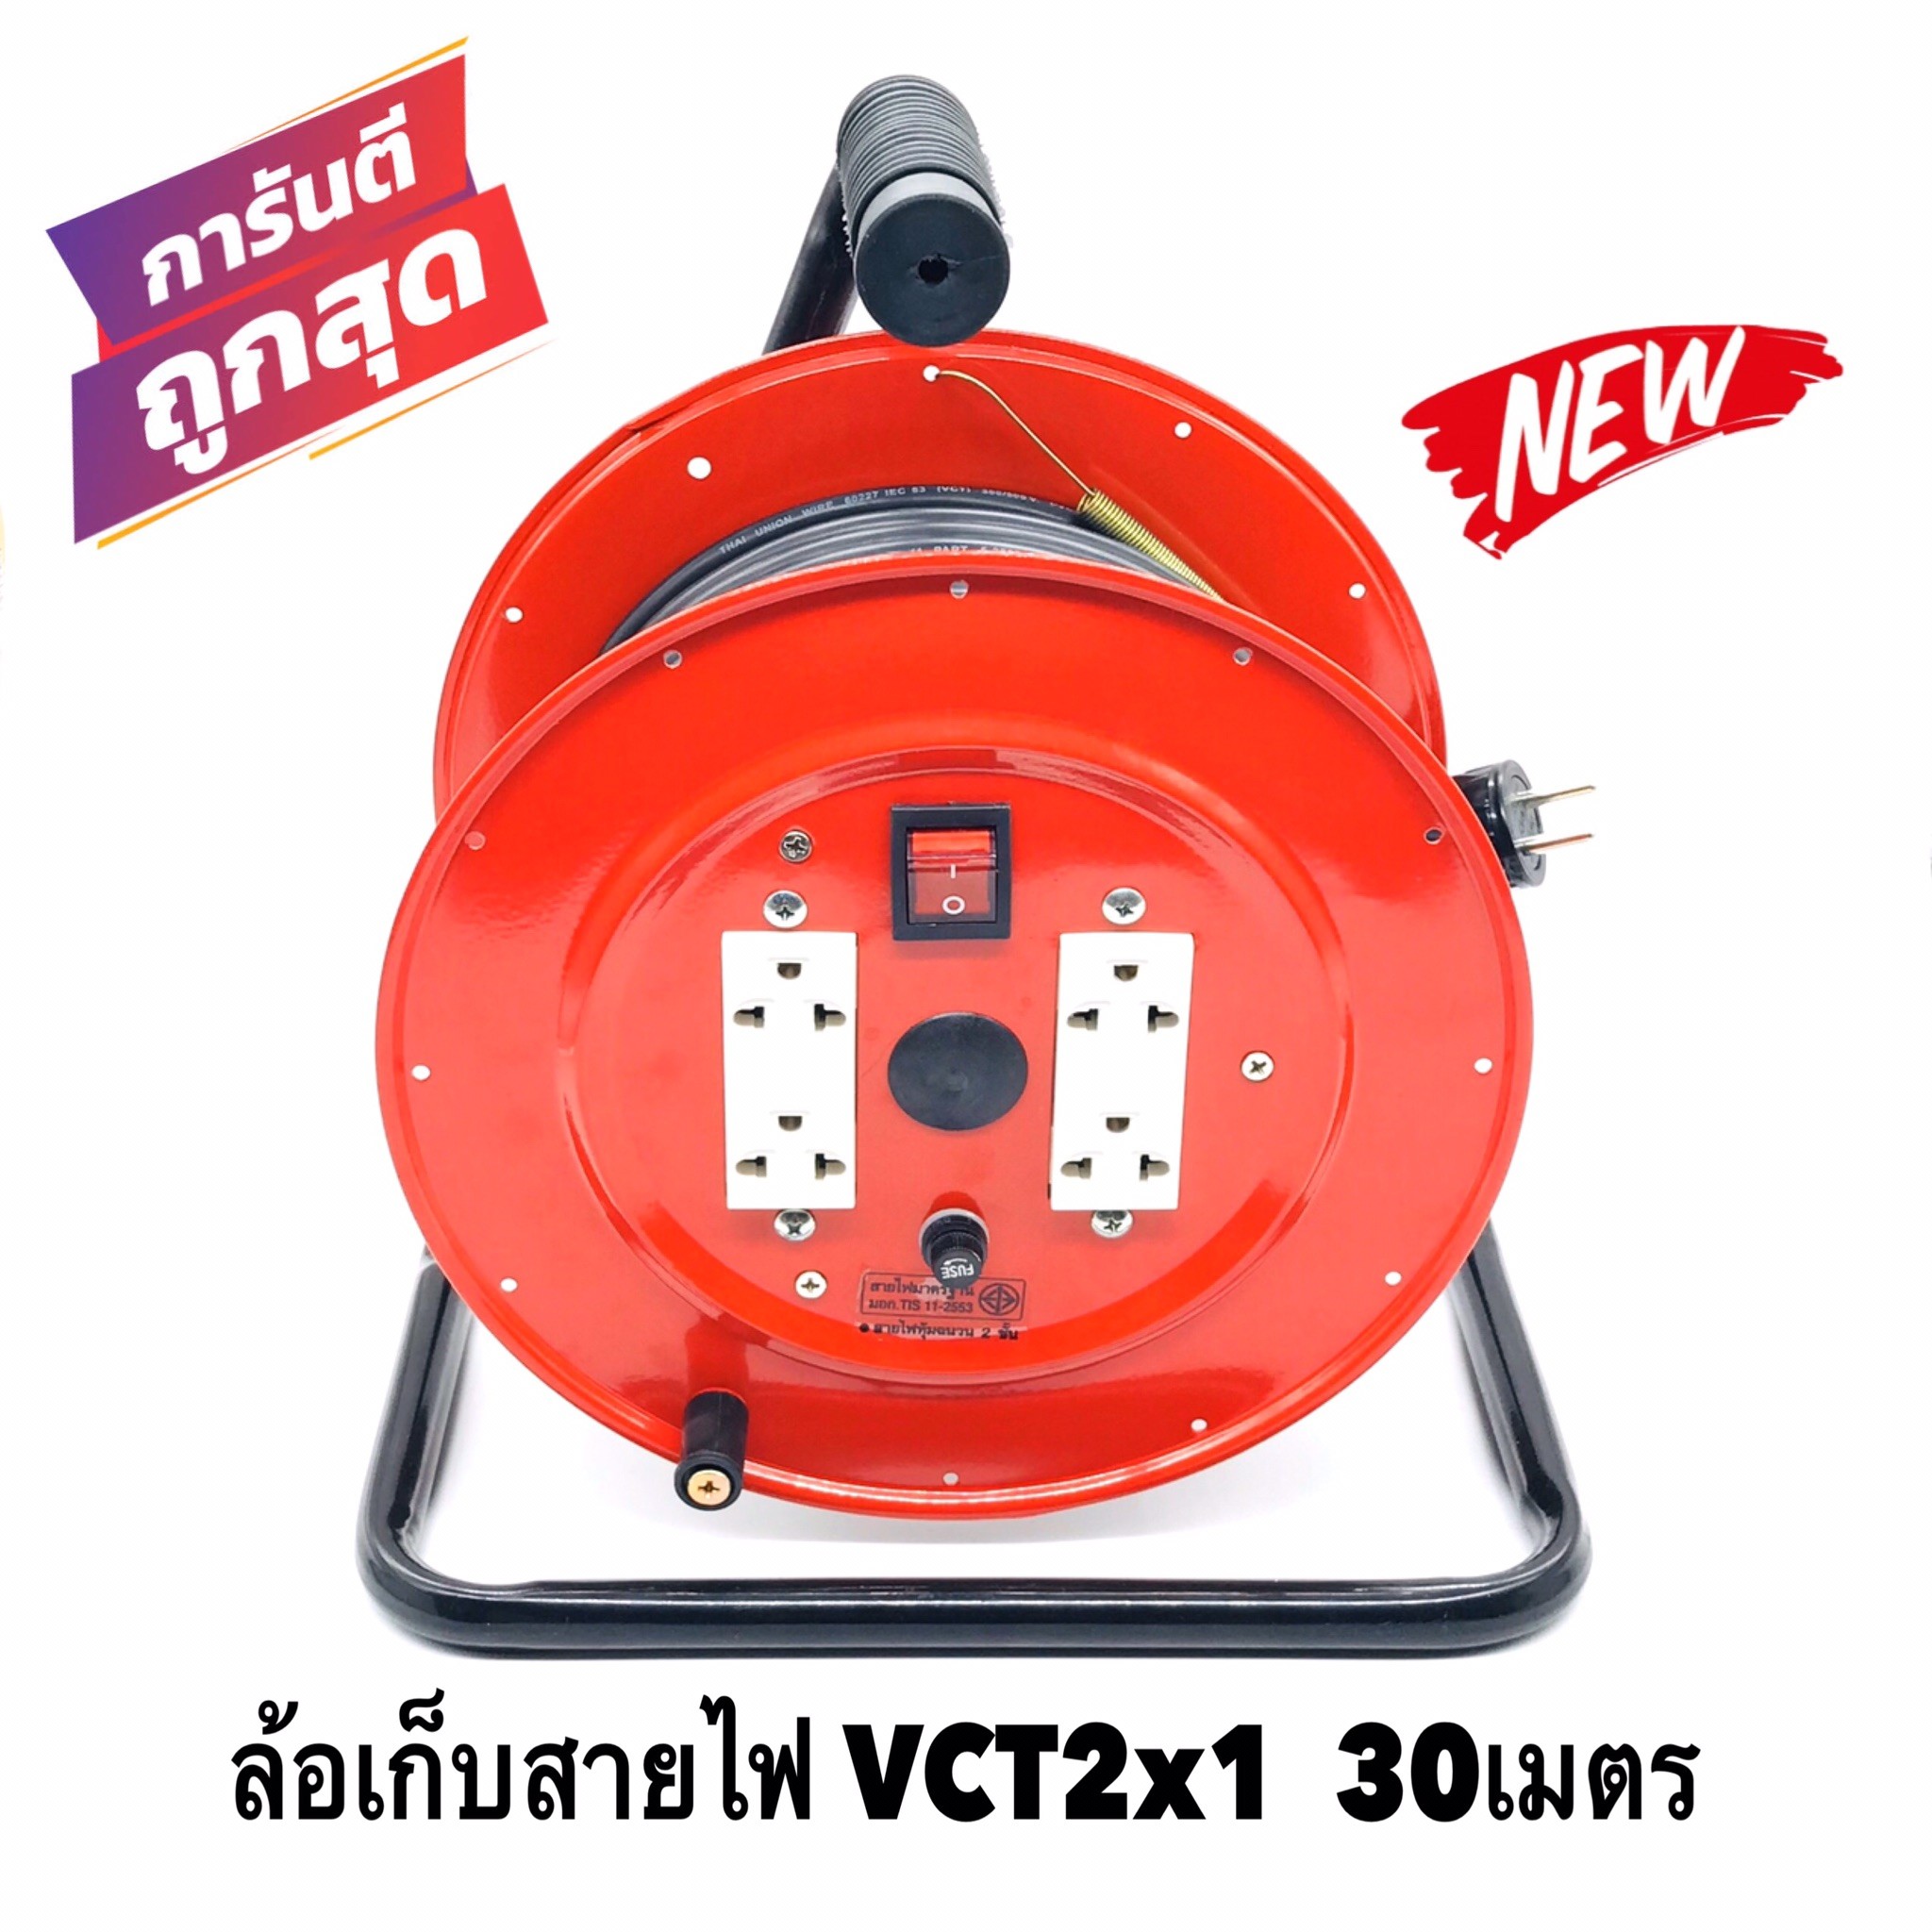 ล้อเก็บสายไฟ VCT 2x1 Sq.mm. พร้อมสาย 30 เมตร  สีแดง รุ่นมีสวิทซ์ควบคุม ปลั๊กกราวคู่ 2ตัว มีฟิวส์ตัดวงจรไฟฟ้า